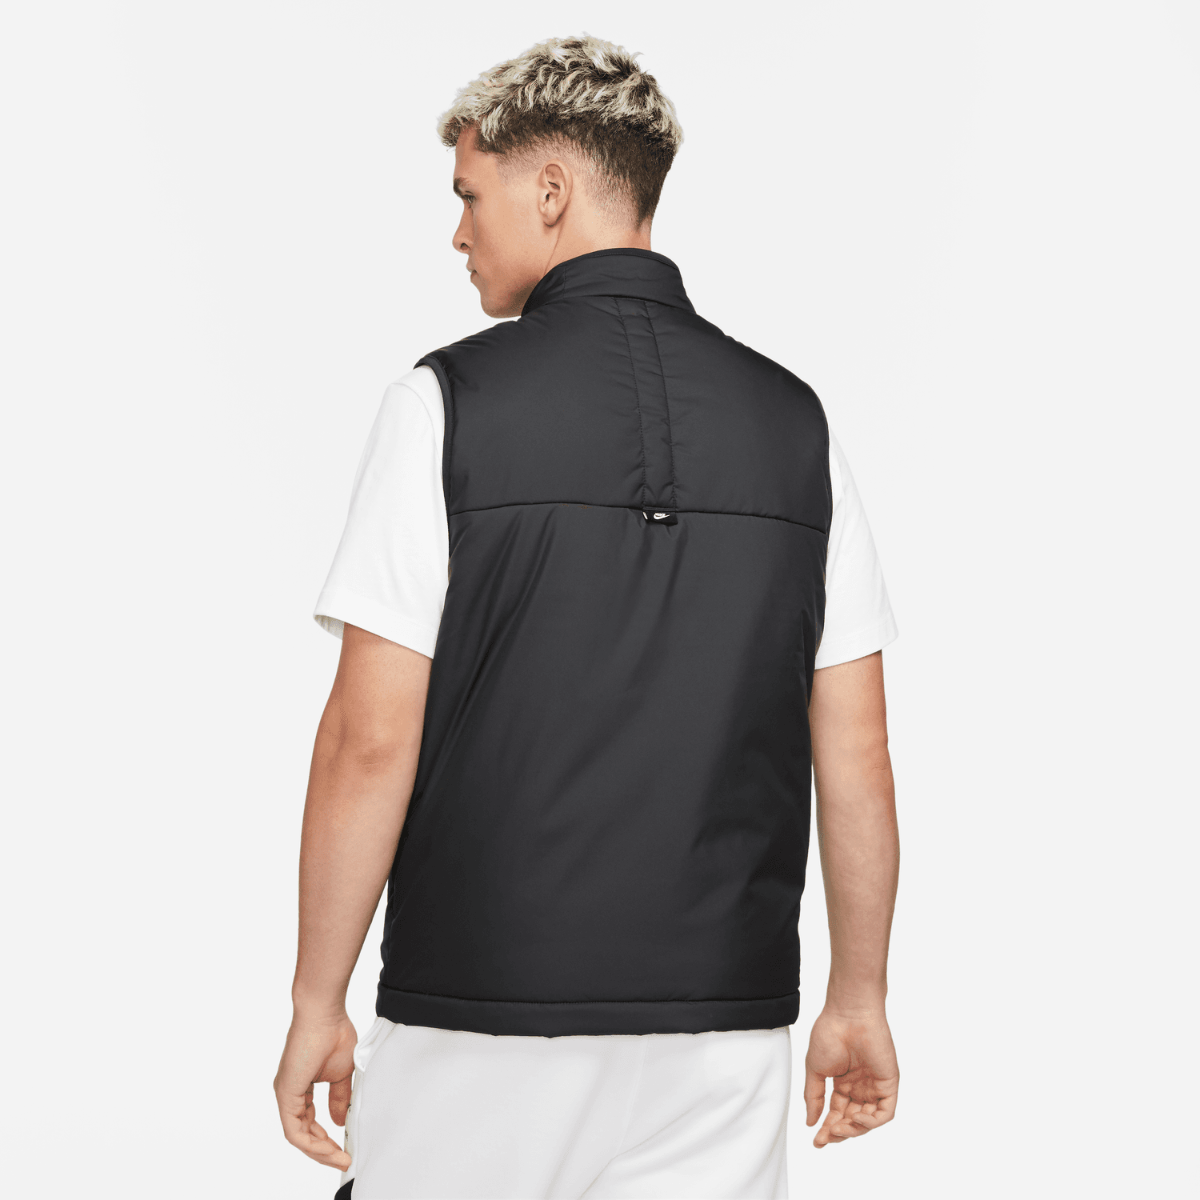 Gilet Nike Sportswear - nero/bianco